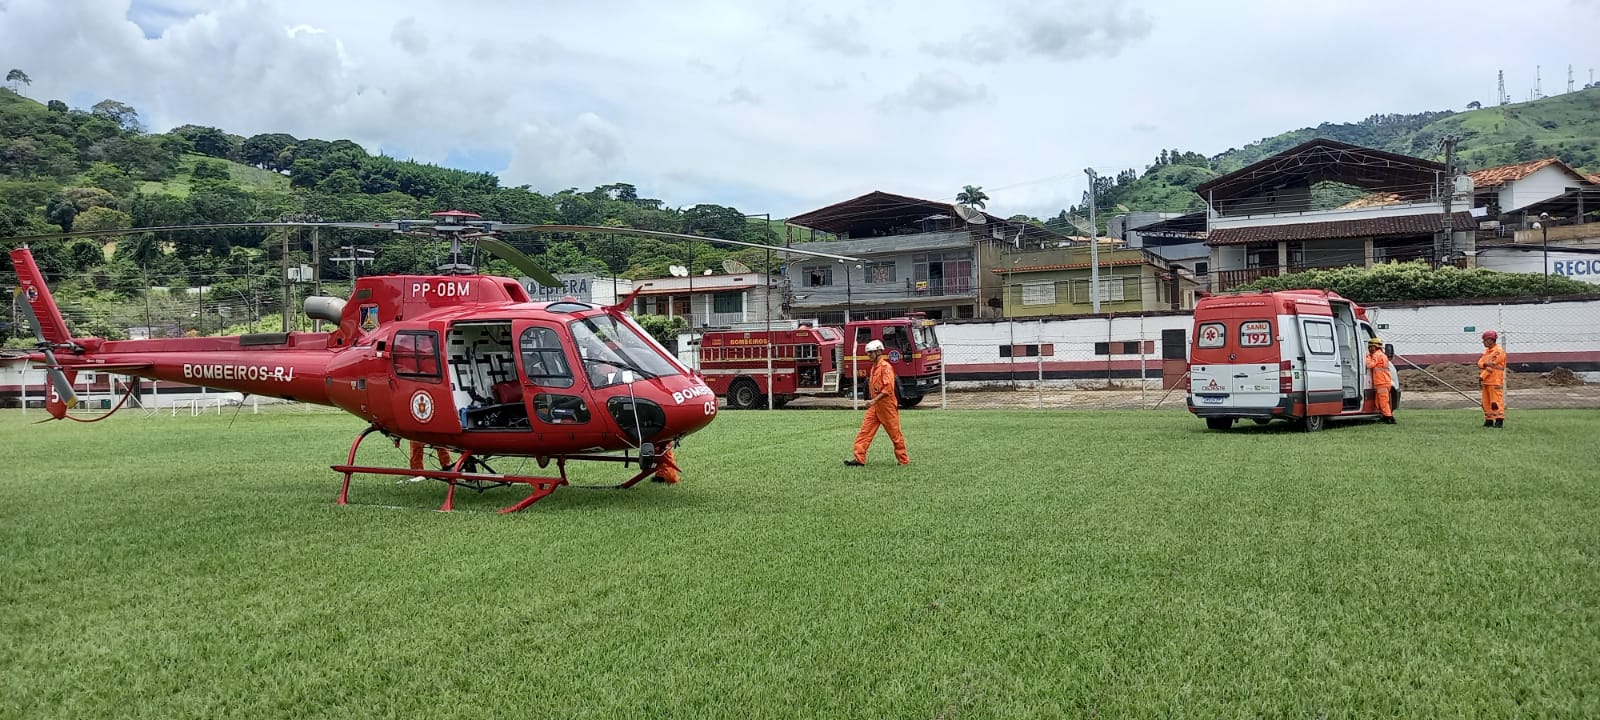 Helicóptero dos Bombeiros transfere atletas feridos no acidente com ônibus do Esporte Clube Vila Maria Helena, em MG (Foto: Divulgação)